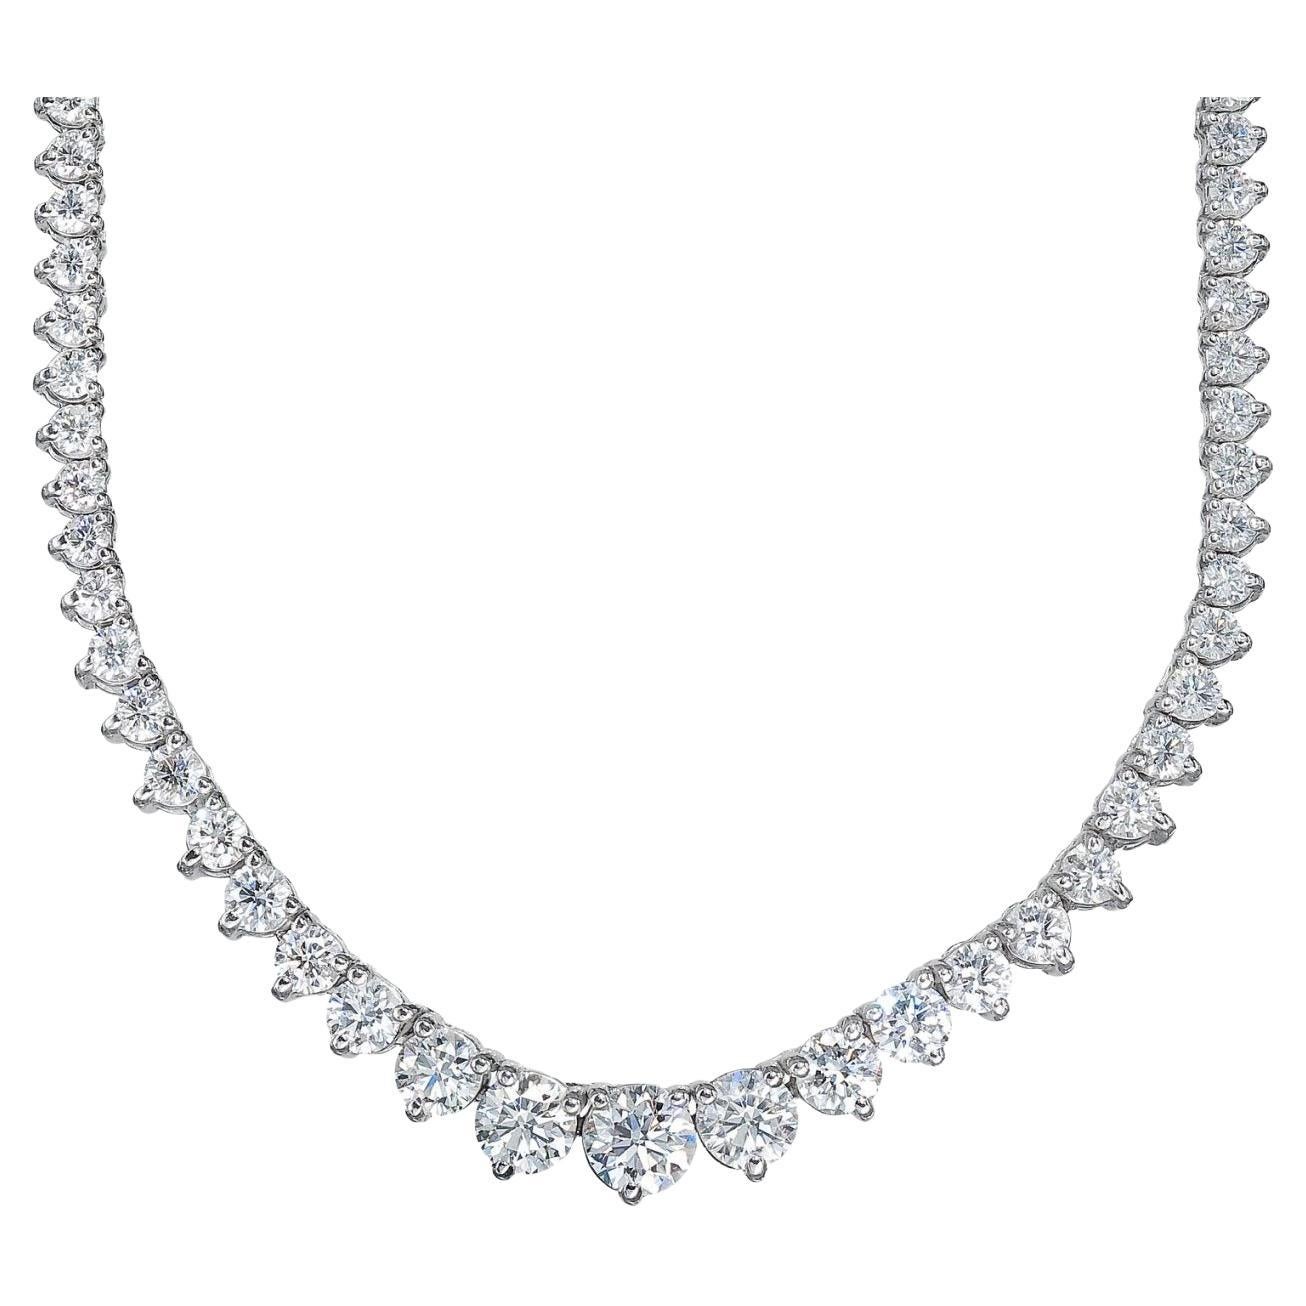 Abgestufte Tennis-Halskette mit 3 runden Diamanten in Zackenform.  D8.96ct.t.w.